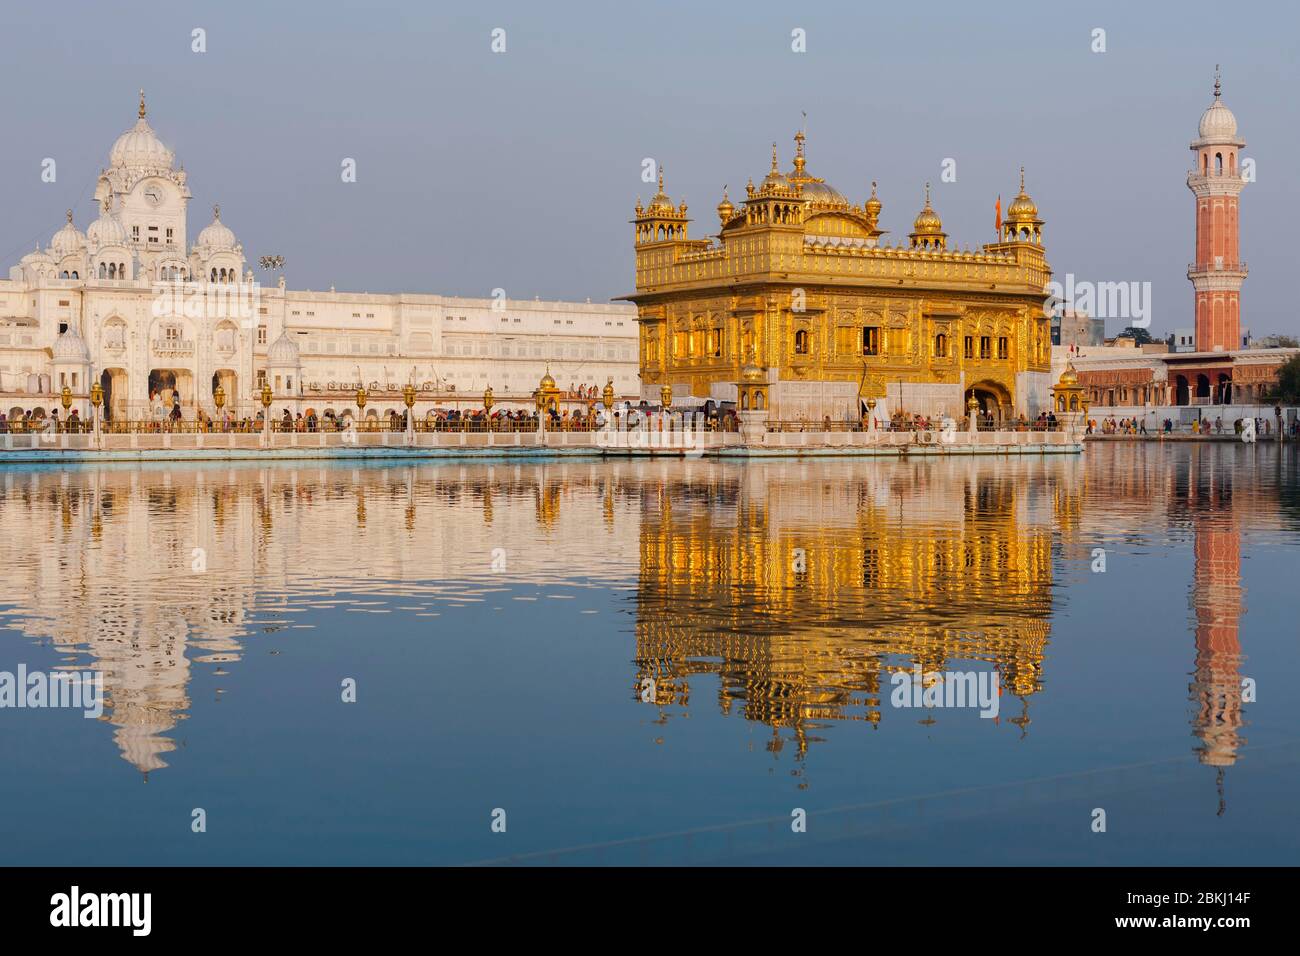 India, Stato del Punjab, Amritsar, Harmandir Sahib, Tempio d'oro sotto il sole, con riflessione nel bacino del Nectar, Amrit Sarovar, luogo santo del Sikhism Foto Stock